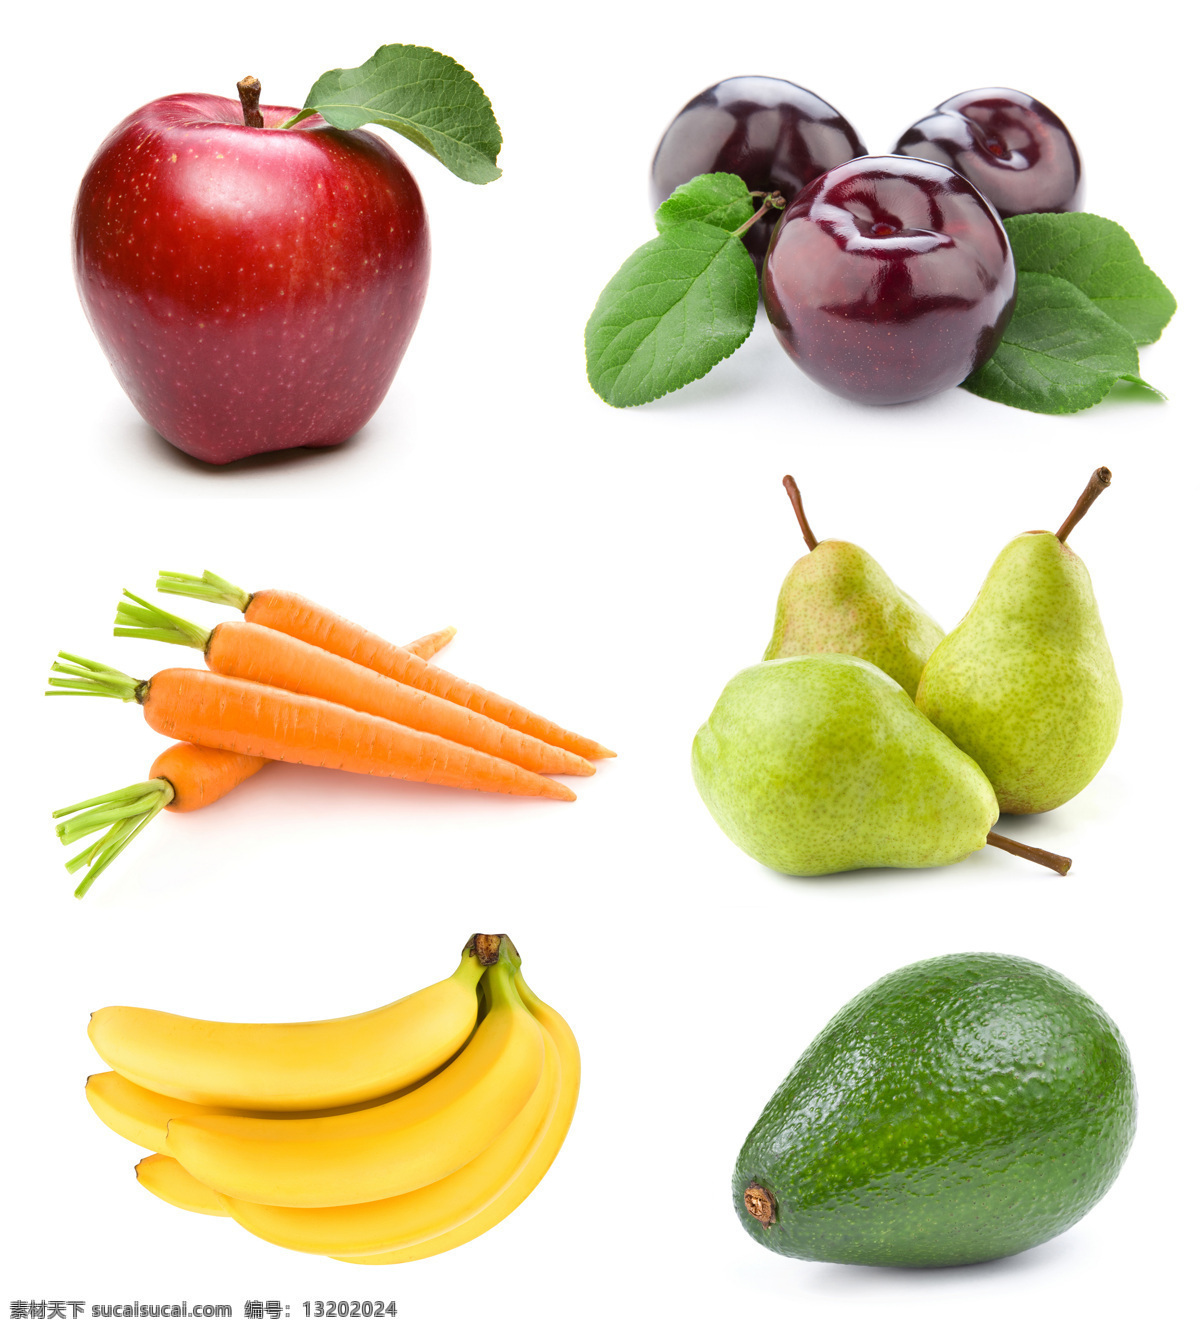 高清水果摄影 苹果 香蕉 萝卜 梨 南瓜 水果 水果摄影 水果素材 水果广告 广告素材 水果蔬菜 餐饮美食 白色